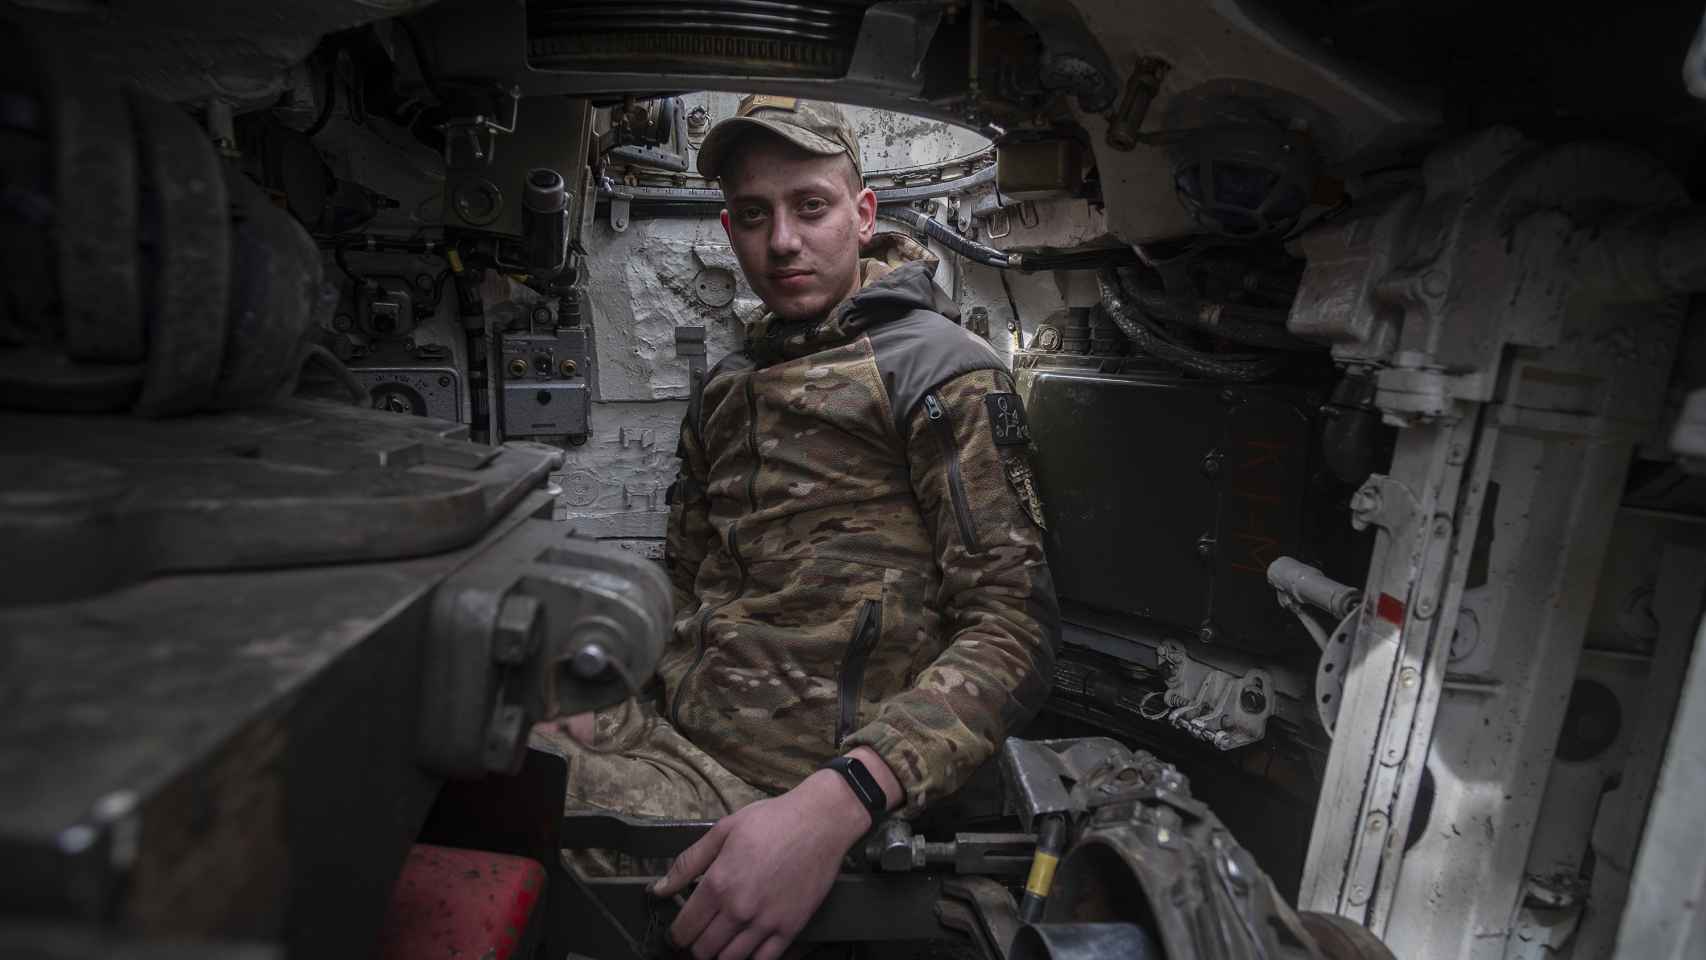 Gleb, el comandante del pieza, en su puesto dentro del carro T-72.